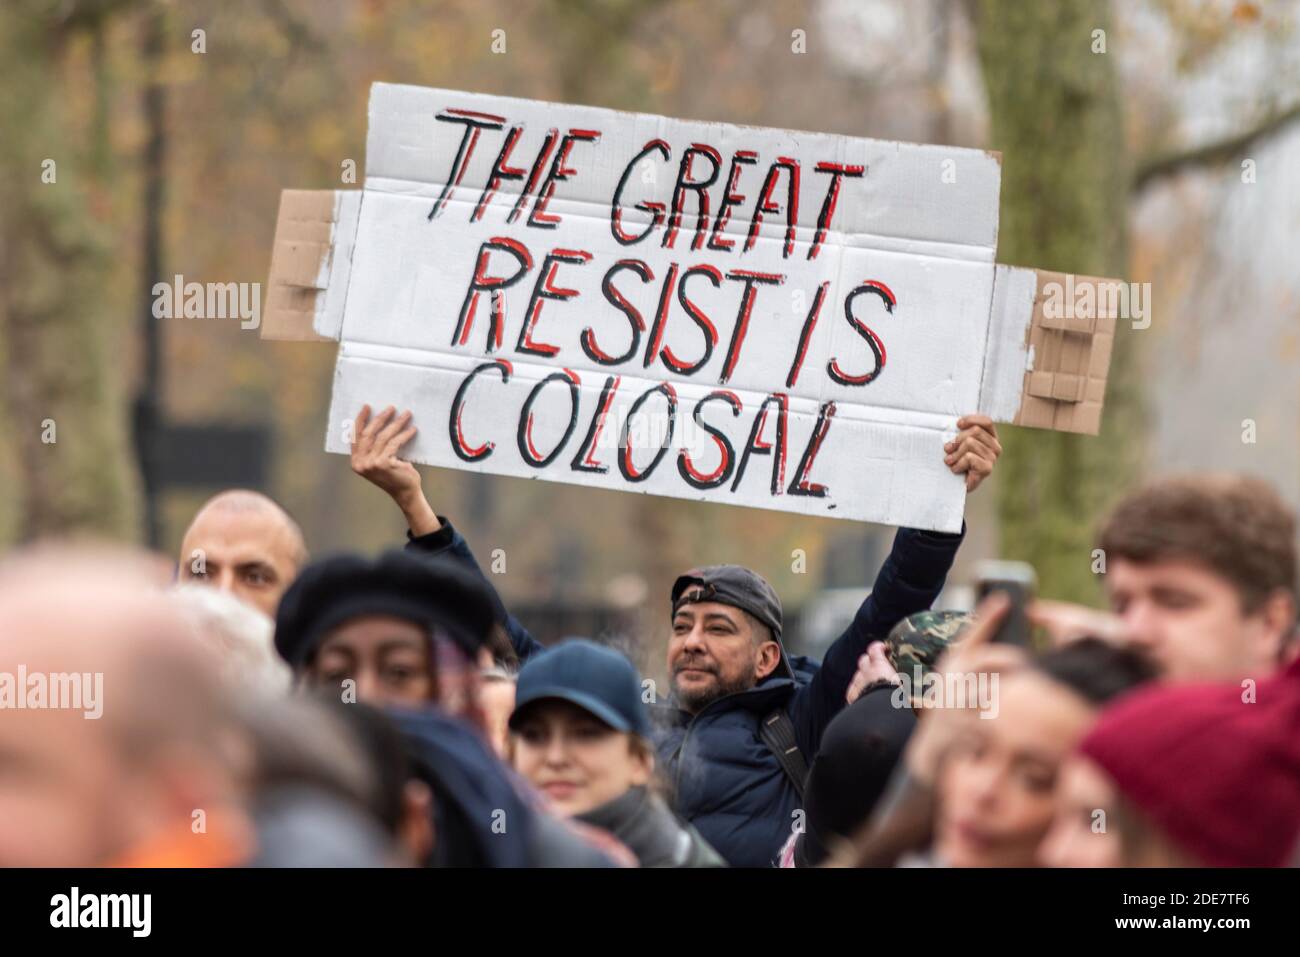 La grande résistance est colossale, mal orthographiée, bannière lors d'une manifestation anti-verrouillage du coronavirus COVID 19 à Londres, Royaume-Uni Banque D'Images